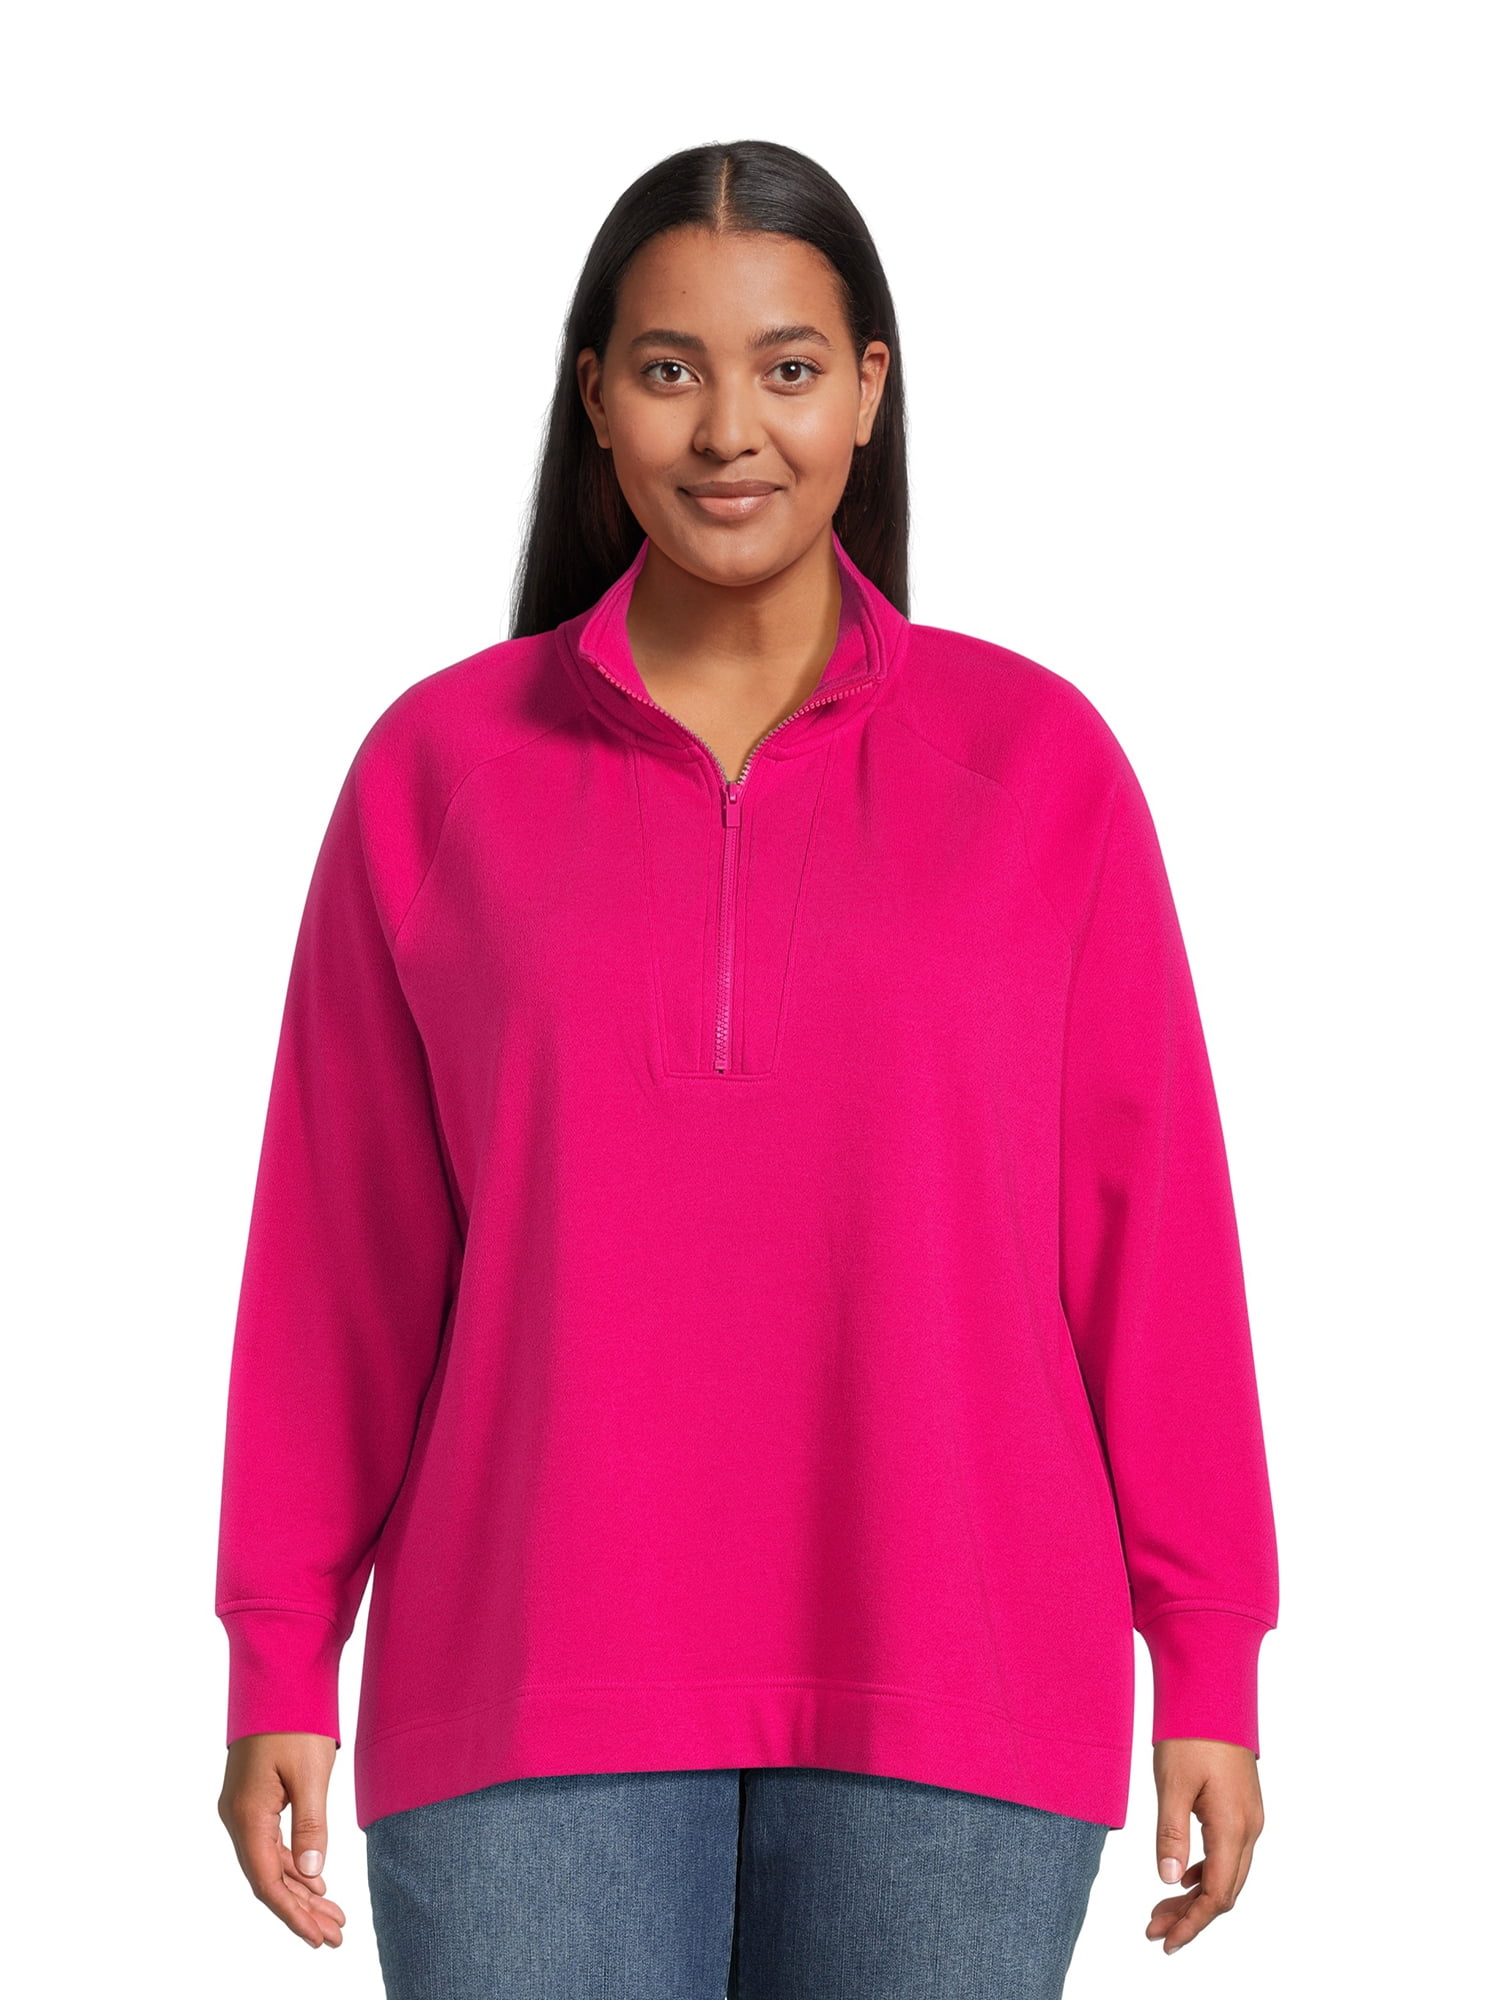 Terra & Sky Women's Plus Size Quarter Zip Sweatshirt - Walmart.com